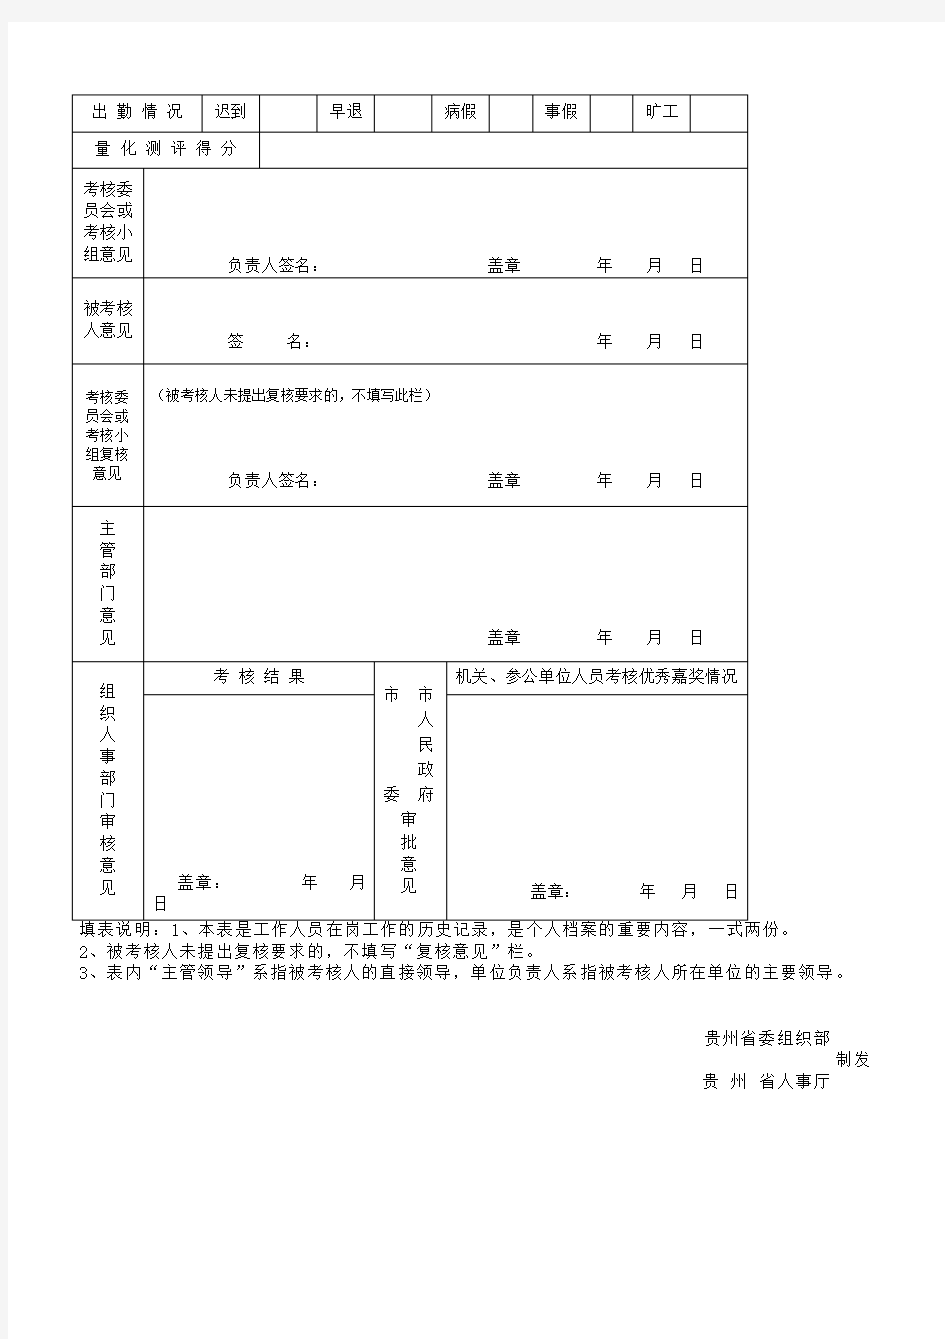 贵州省机关事业单位工作人员年度考核登记表